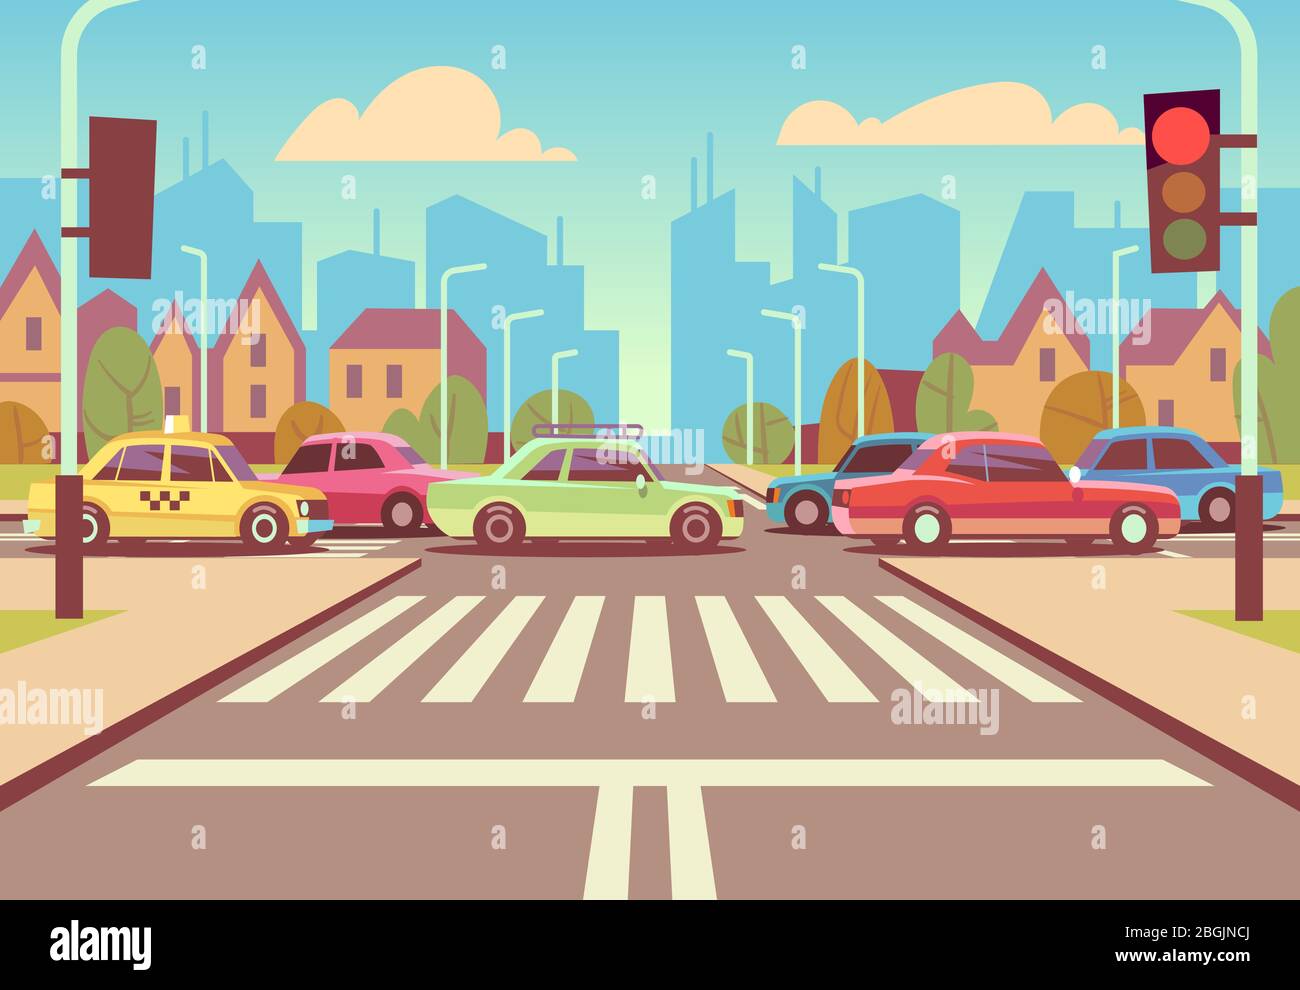 Carrefour de la ville de dessin animé avec des voitures dans la confiture de trafic, trottoir, tableau de bord et illustration vectorielle de paysage urbain. Route avec voiture sur la voie d'intersection Illustration de Vecteur